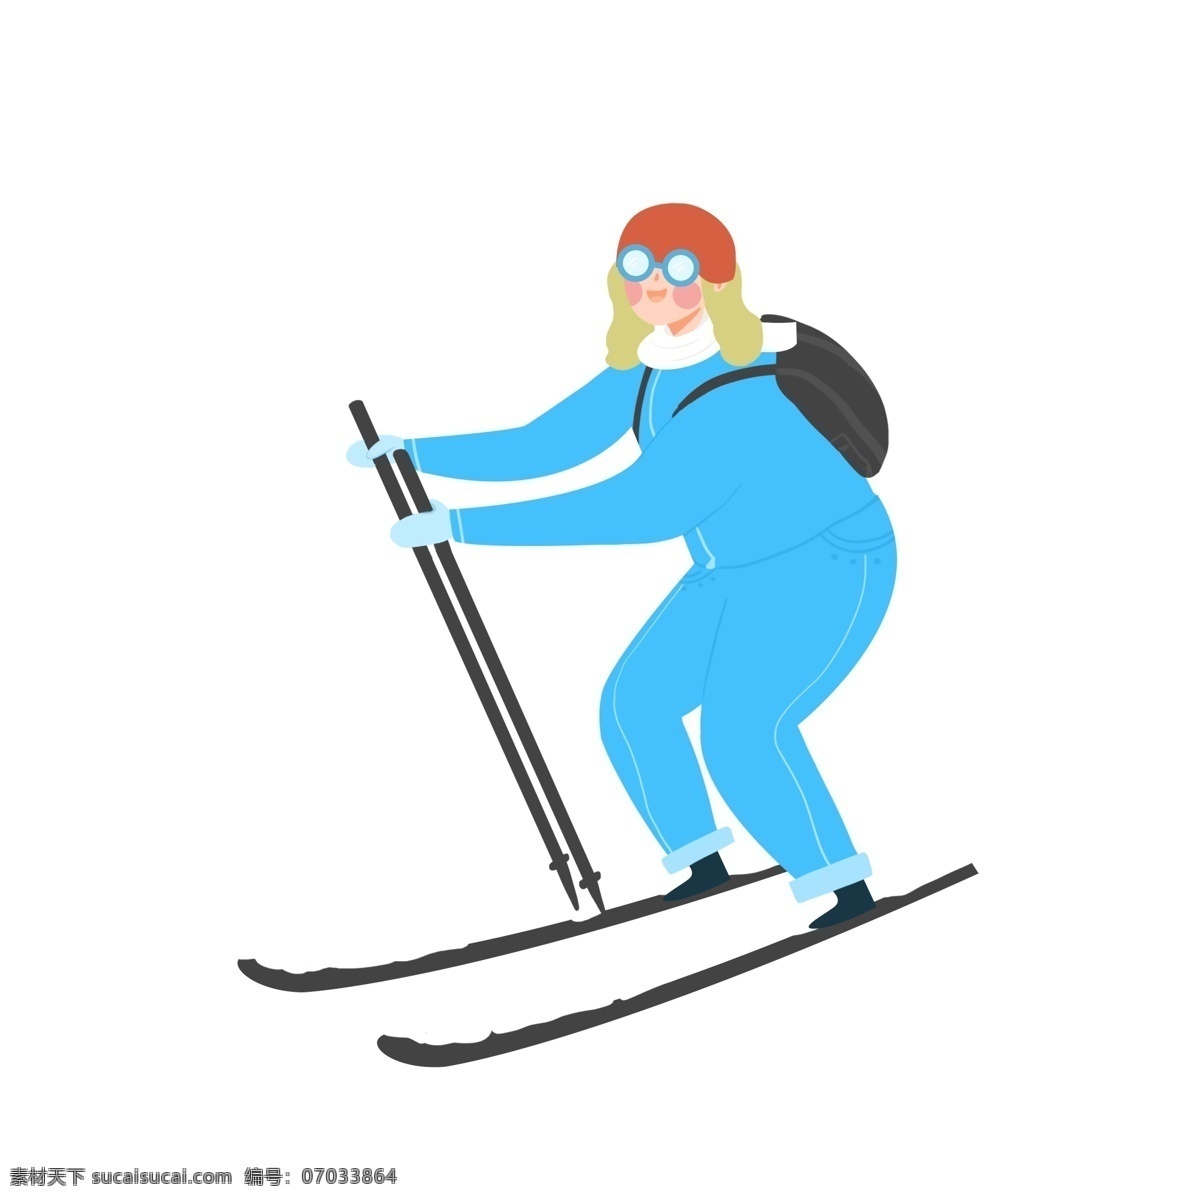 冬天 滑雪 女人 小 清新 简约 商用 元素 简洁 卡通 插画 小清新 手绘 人物设计